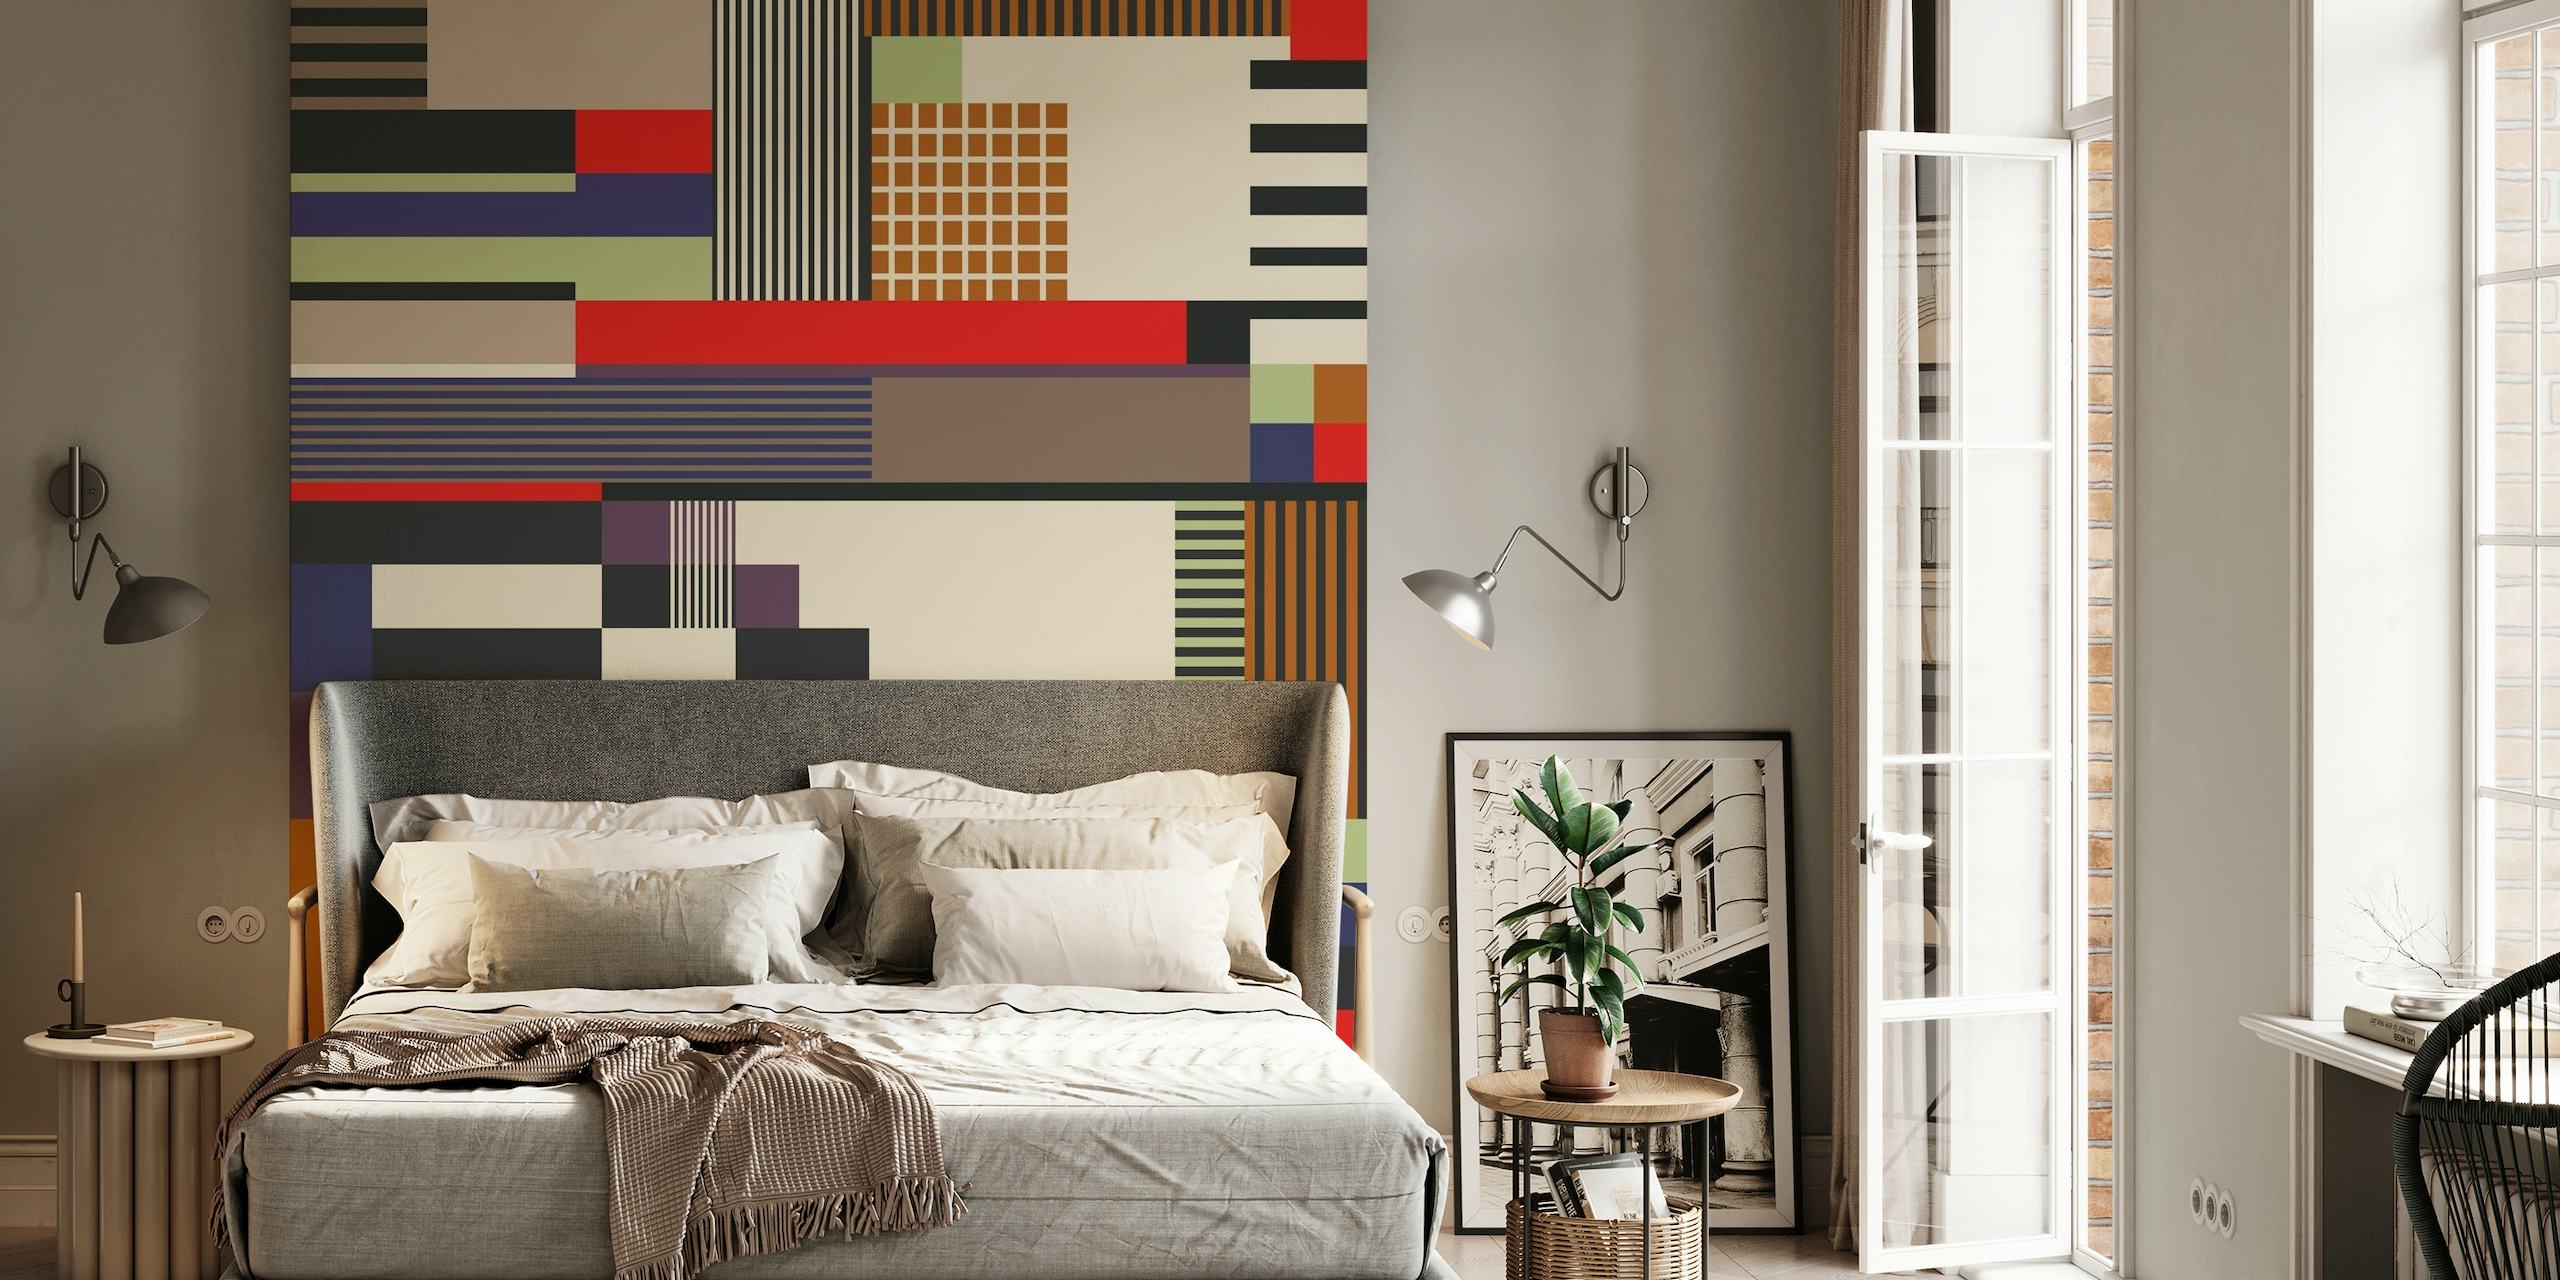 Fotomural vinílico de parede de padrão geométrico abstrato com uma mistura de retângulos e linhas em várias cores